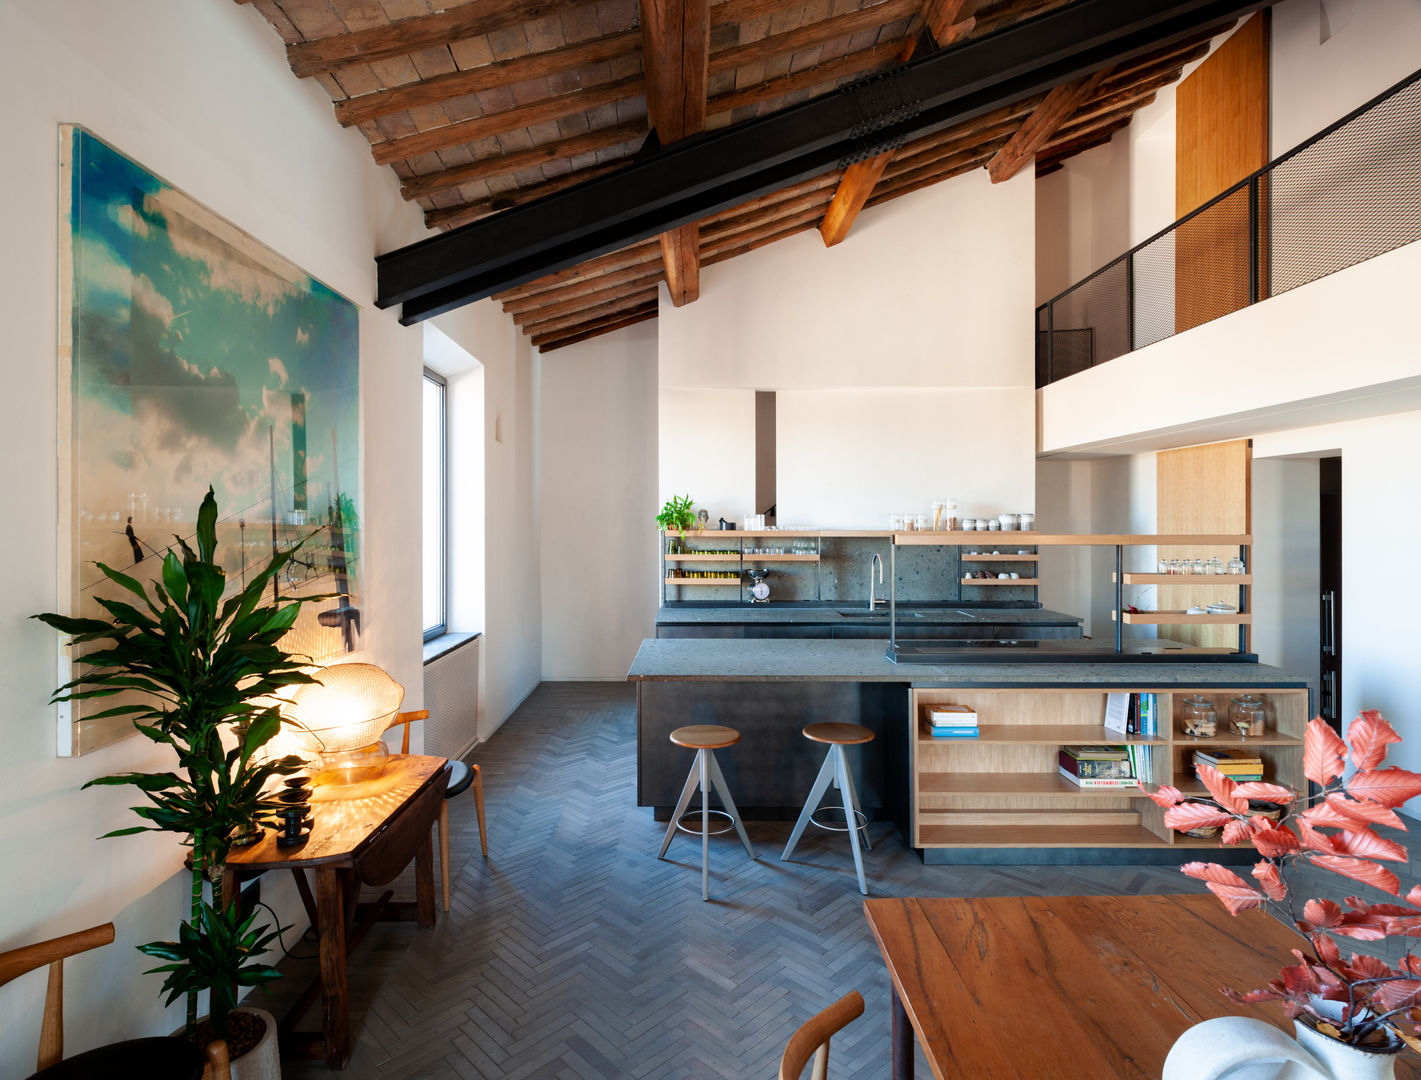 ATTICO TRASTEVERE | 200 MQ, Leonori Architetti Leonori Architetti Built-in kitchens Concrete